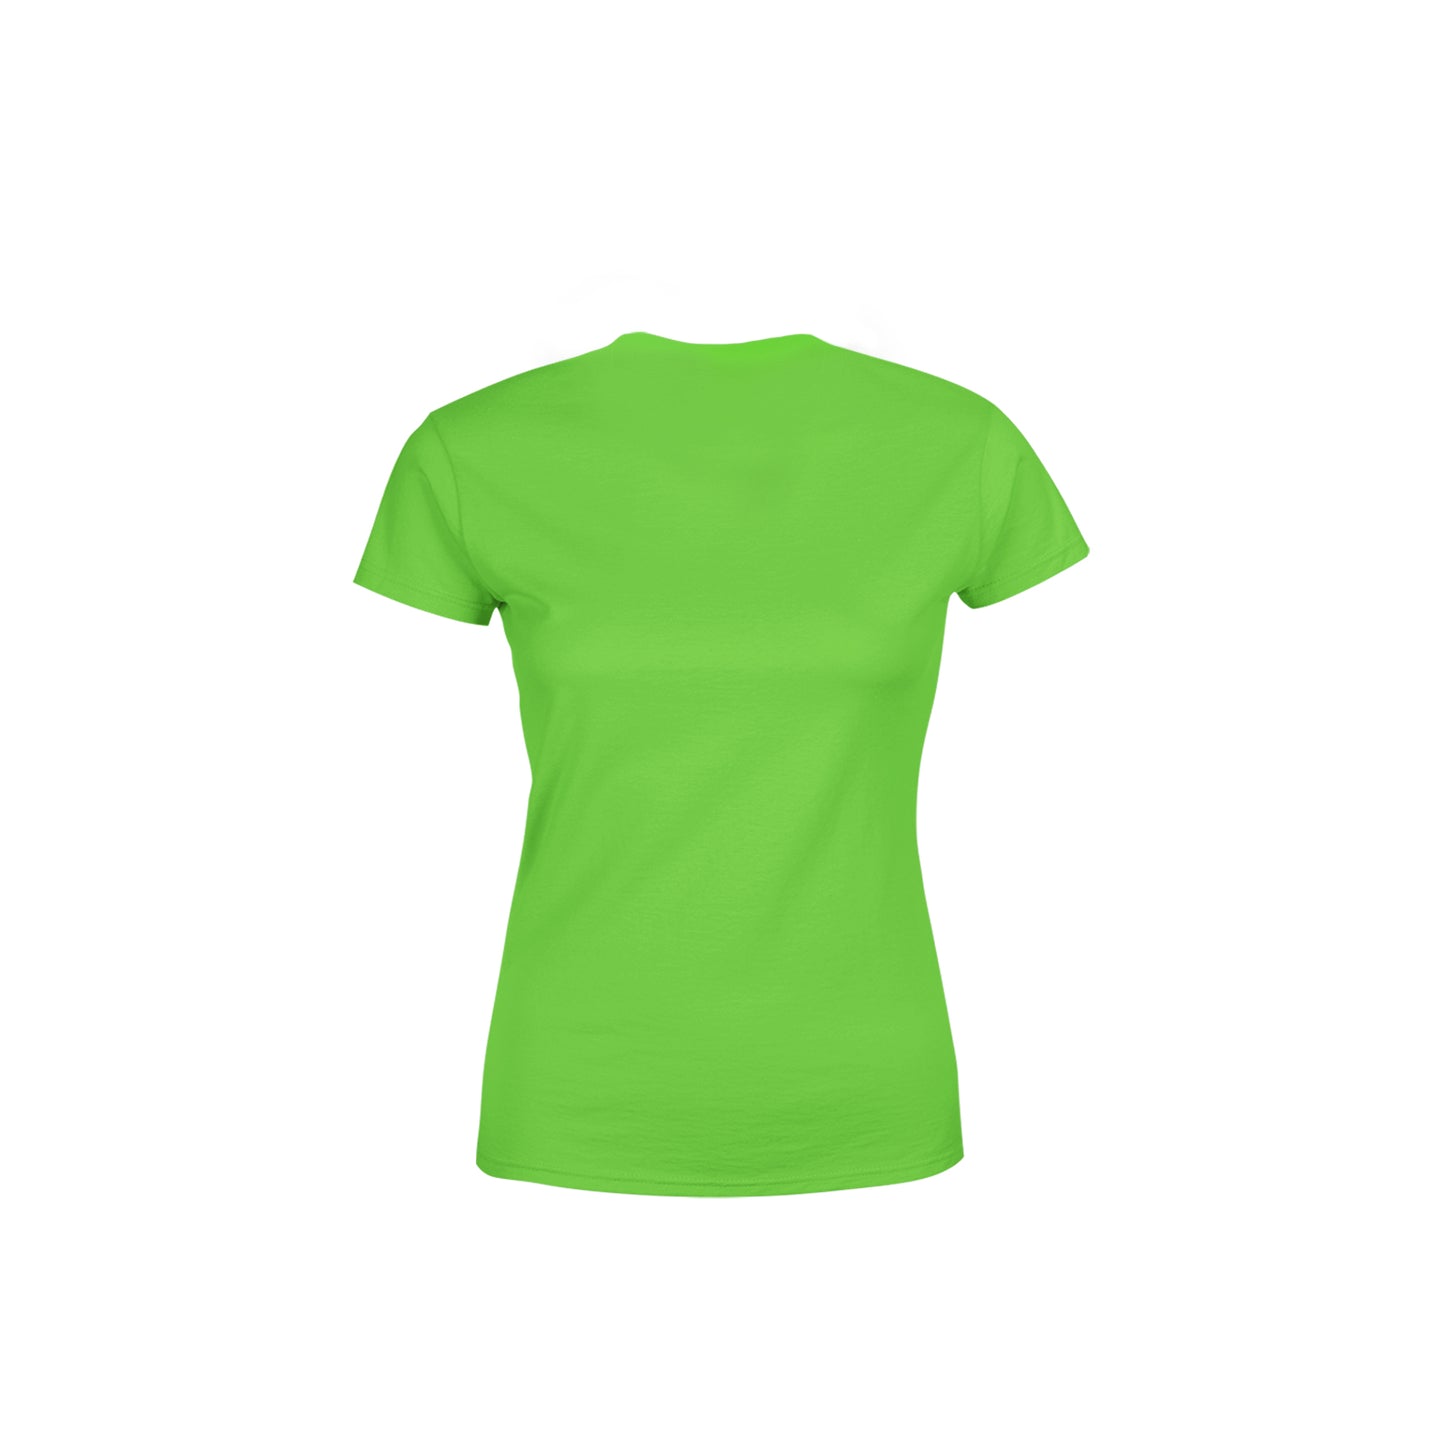 57 Number Women's T-Shirt (Liril Green)